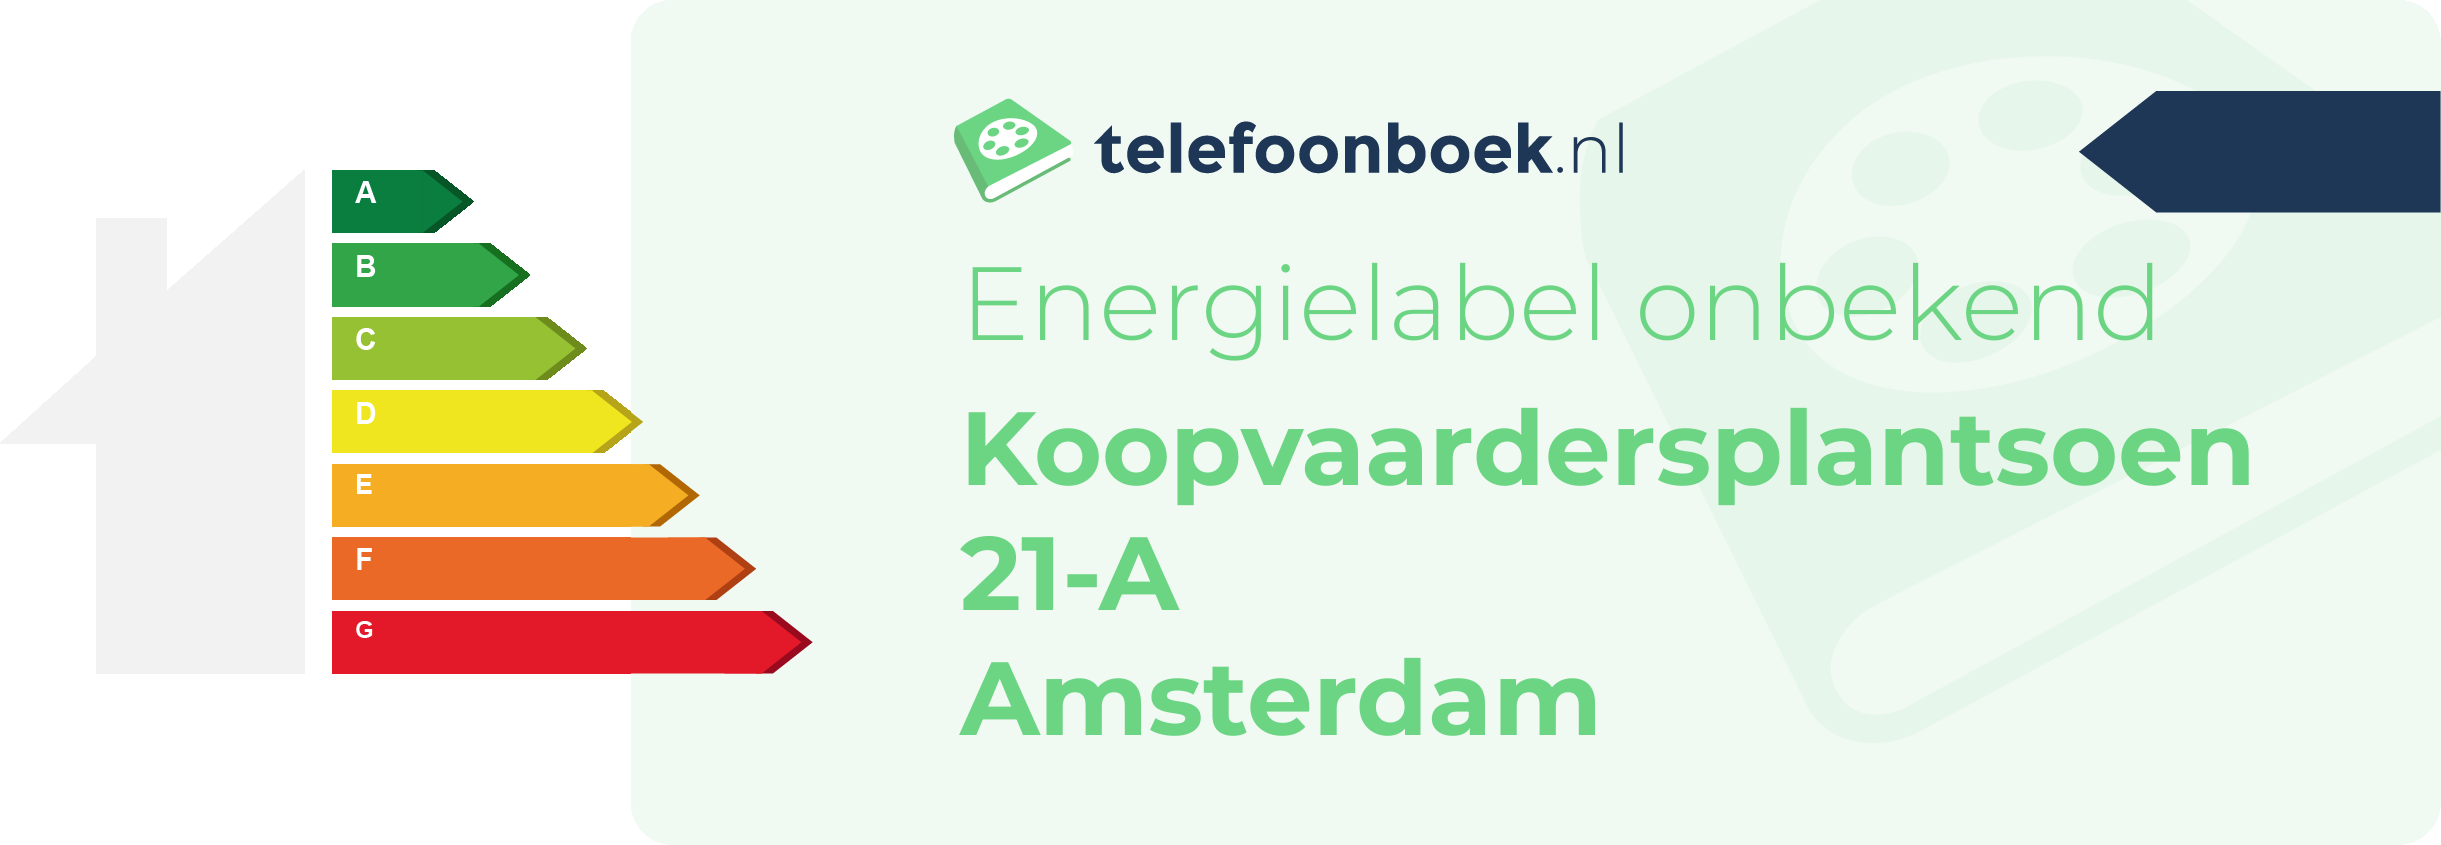 Energielabel Koopvaardersplantsoen 21-A Amsterdam